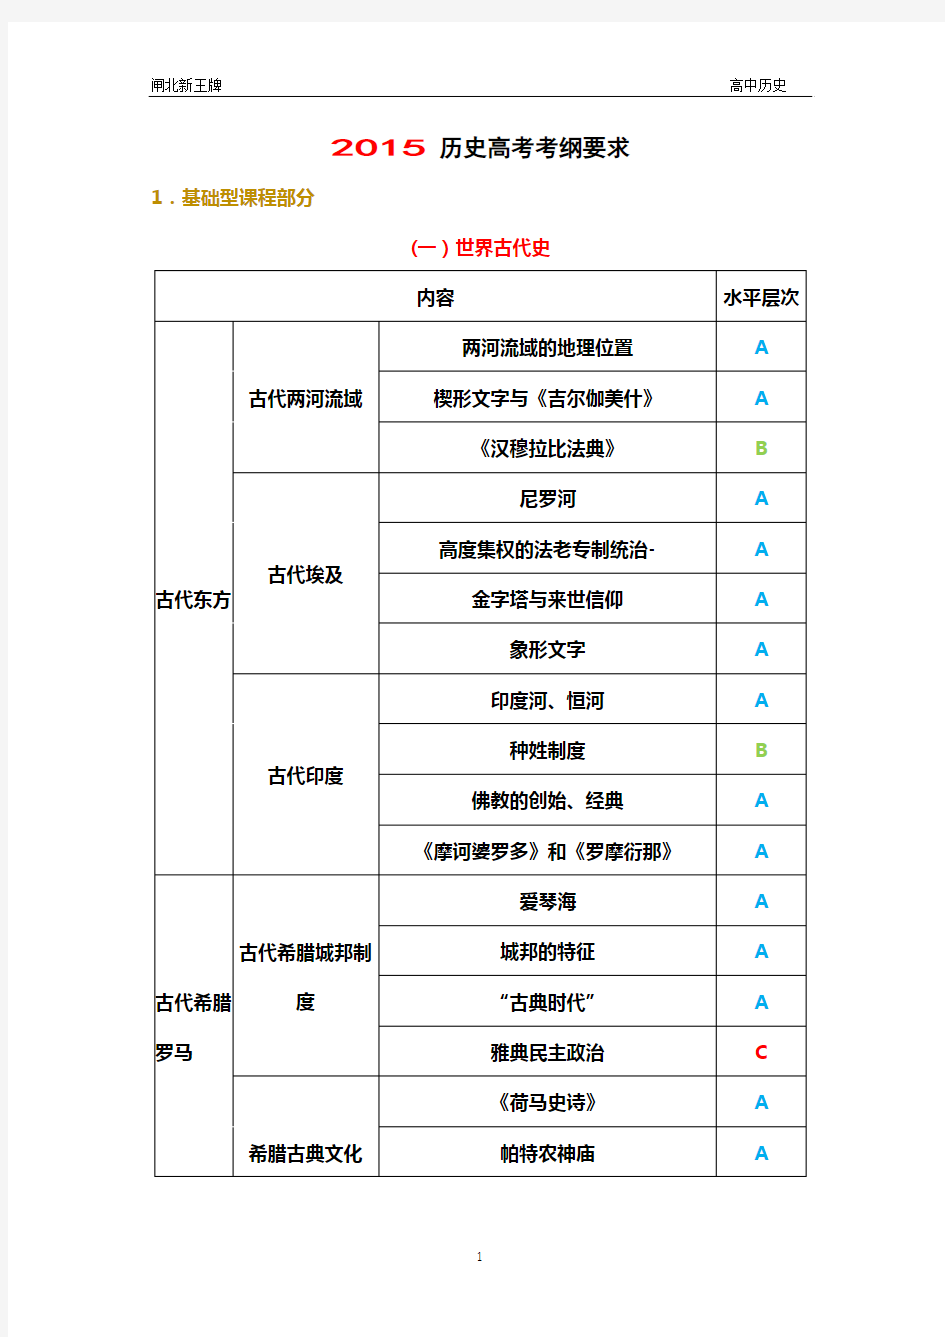 2015上海历史高考考纲要求